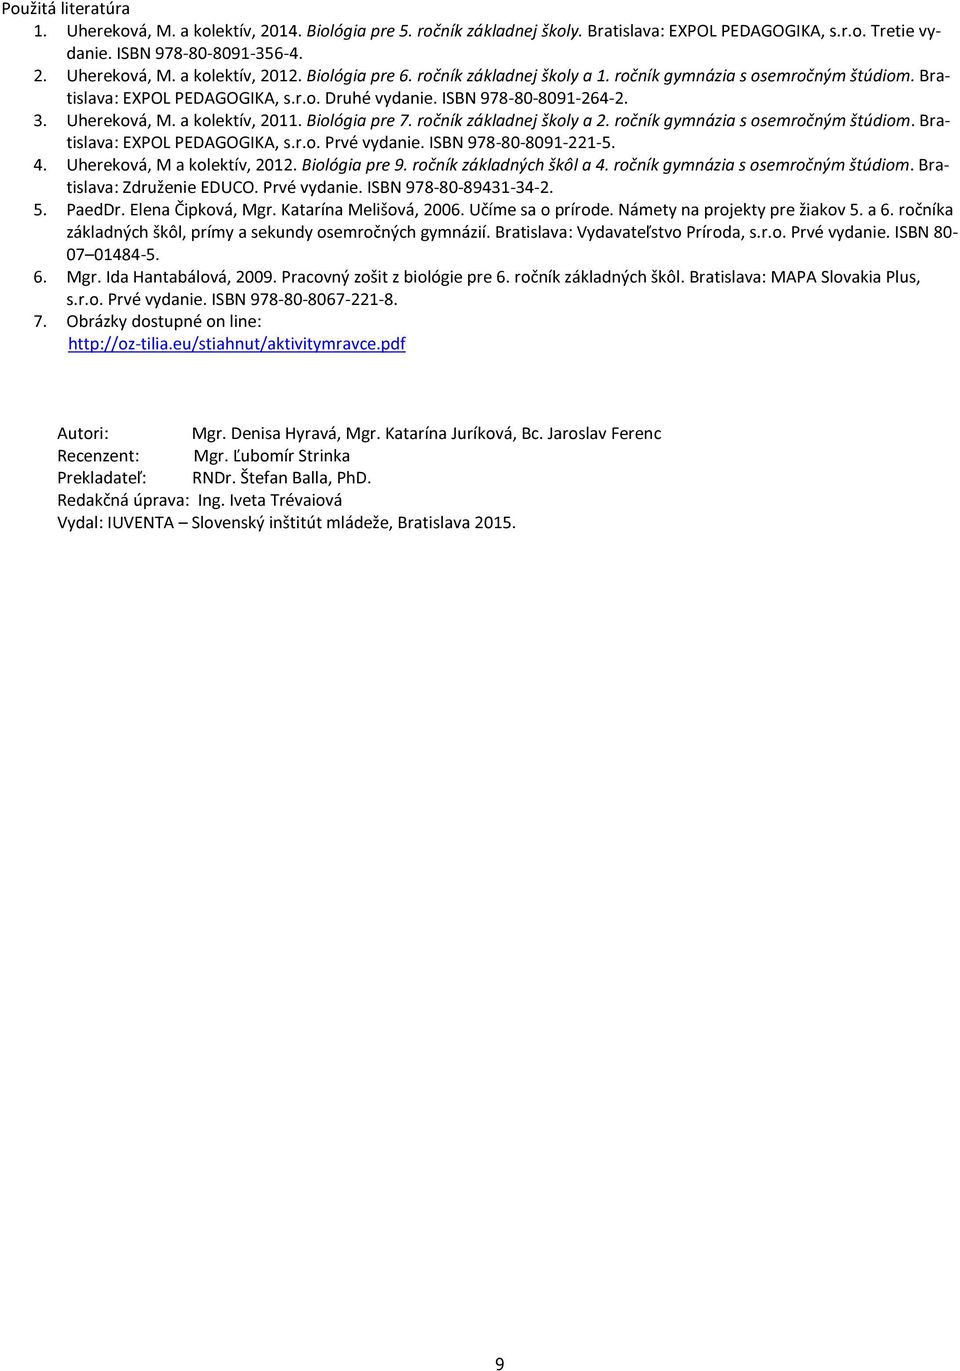 Biológia pre 7. ročník základnej školy a 2. ročník gymnázia s osemročným štúdiom. Bratislava: EXPOL PEDAGOGIKA, s.r.o. Prvé vydanie. ISBN 978-80-8091-221-5. 4. Uhereková, M a kolektív, 2012.